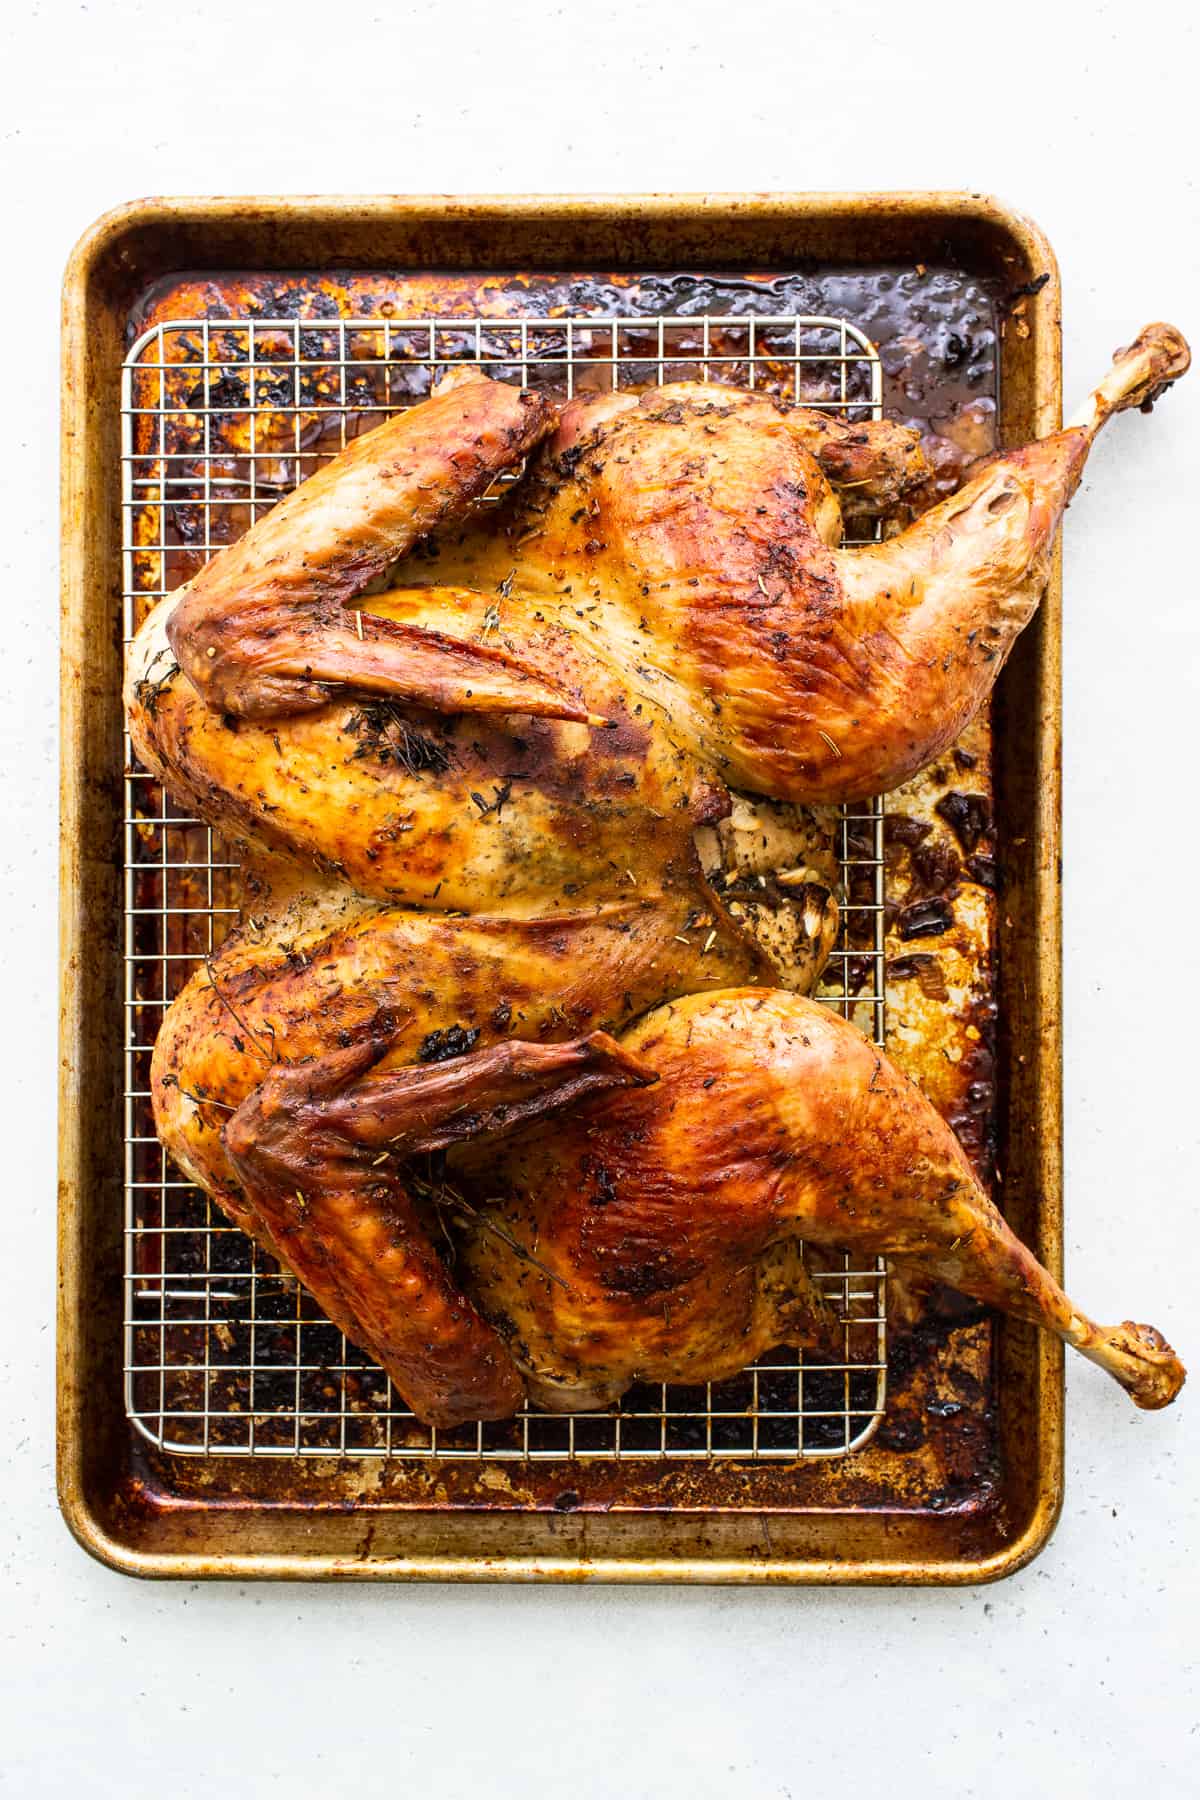 turkey on baking sheet.